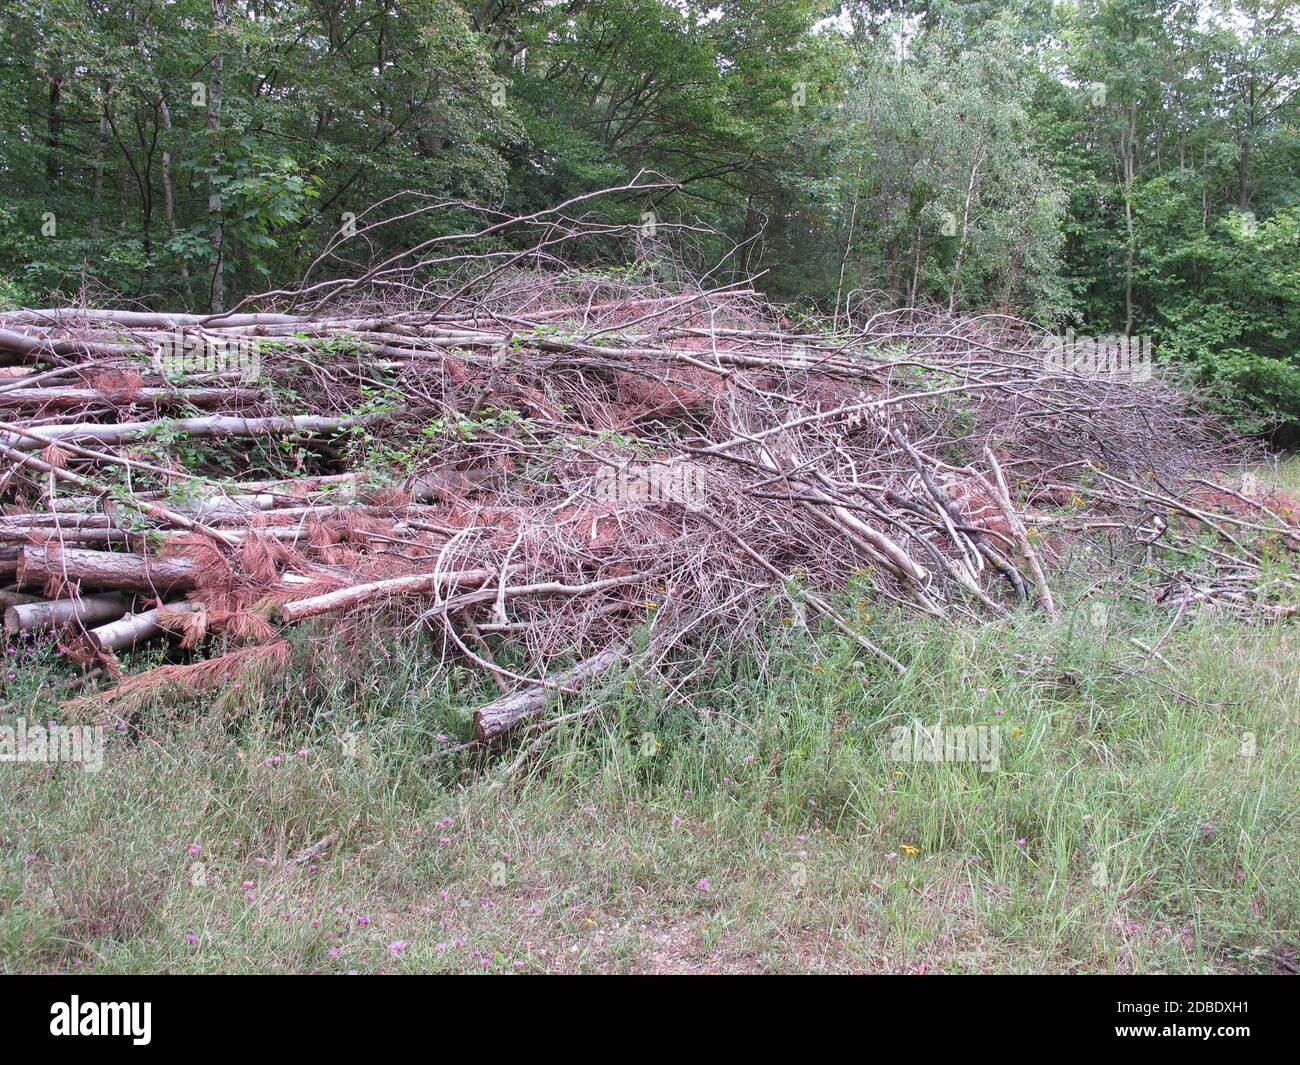 Gestione forestale e pulizia nella foresta - legno morto in una radura Foto Stock